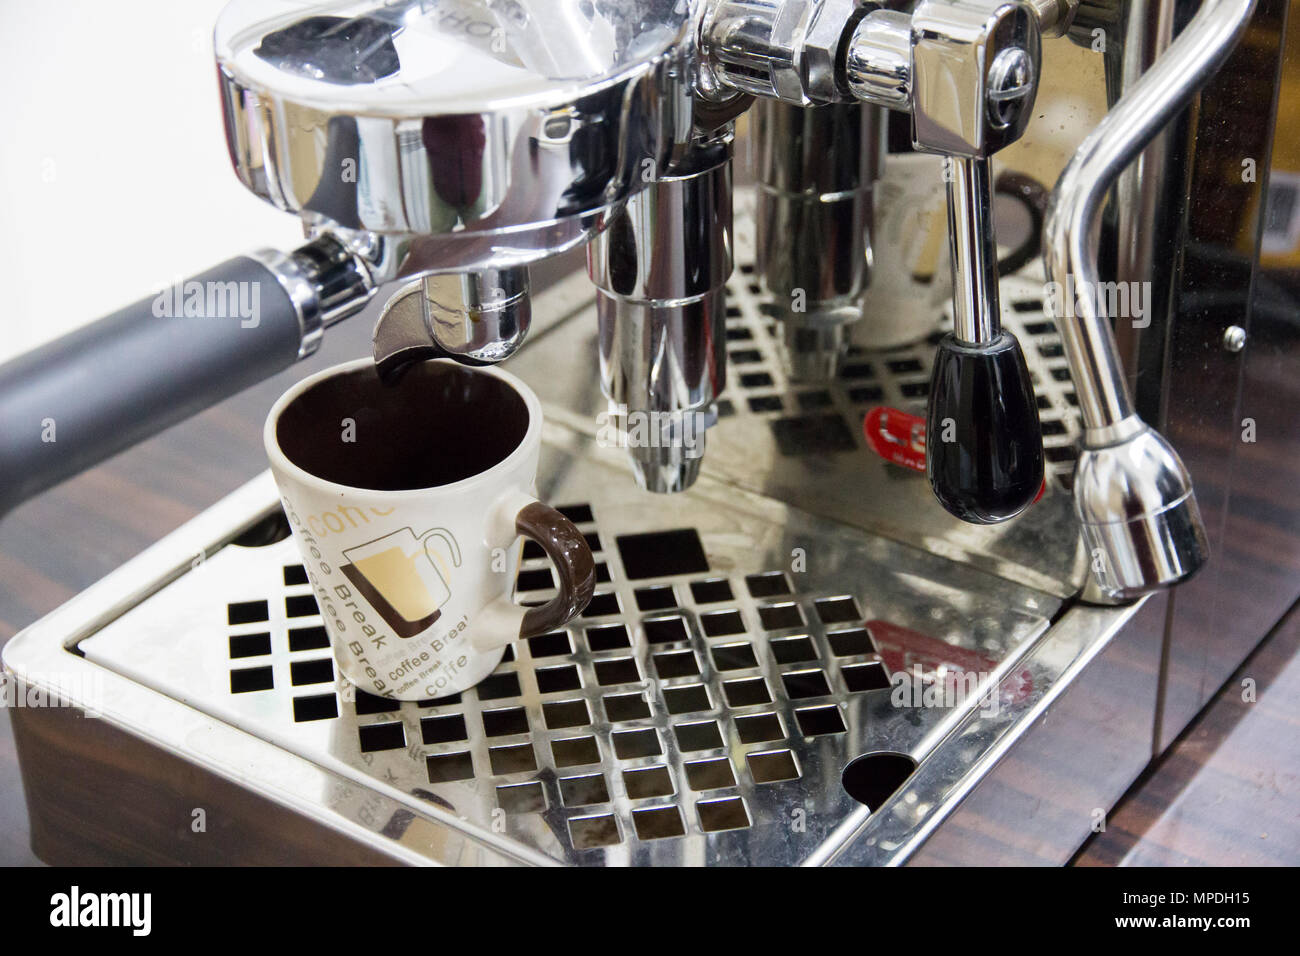 https://c8.alamy.com/compes/mpdh15/metal-moderno-de-la-maquina-de-cafe-esta-vacia-taza-de-cafe-mpdh15.jpg